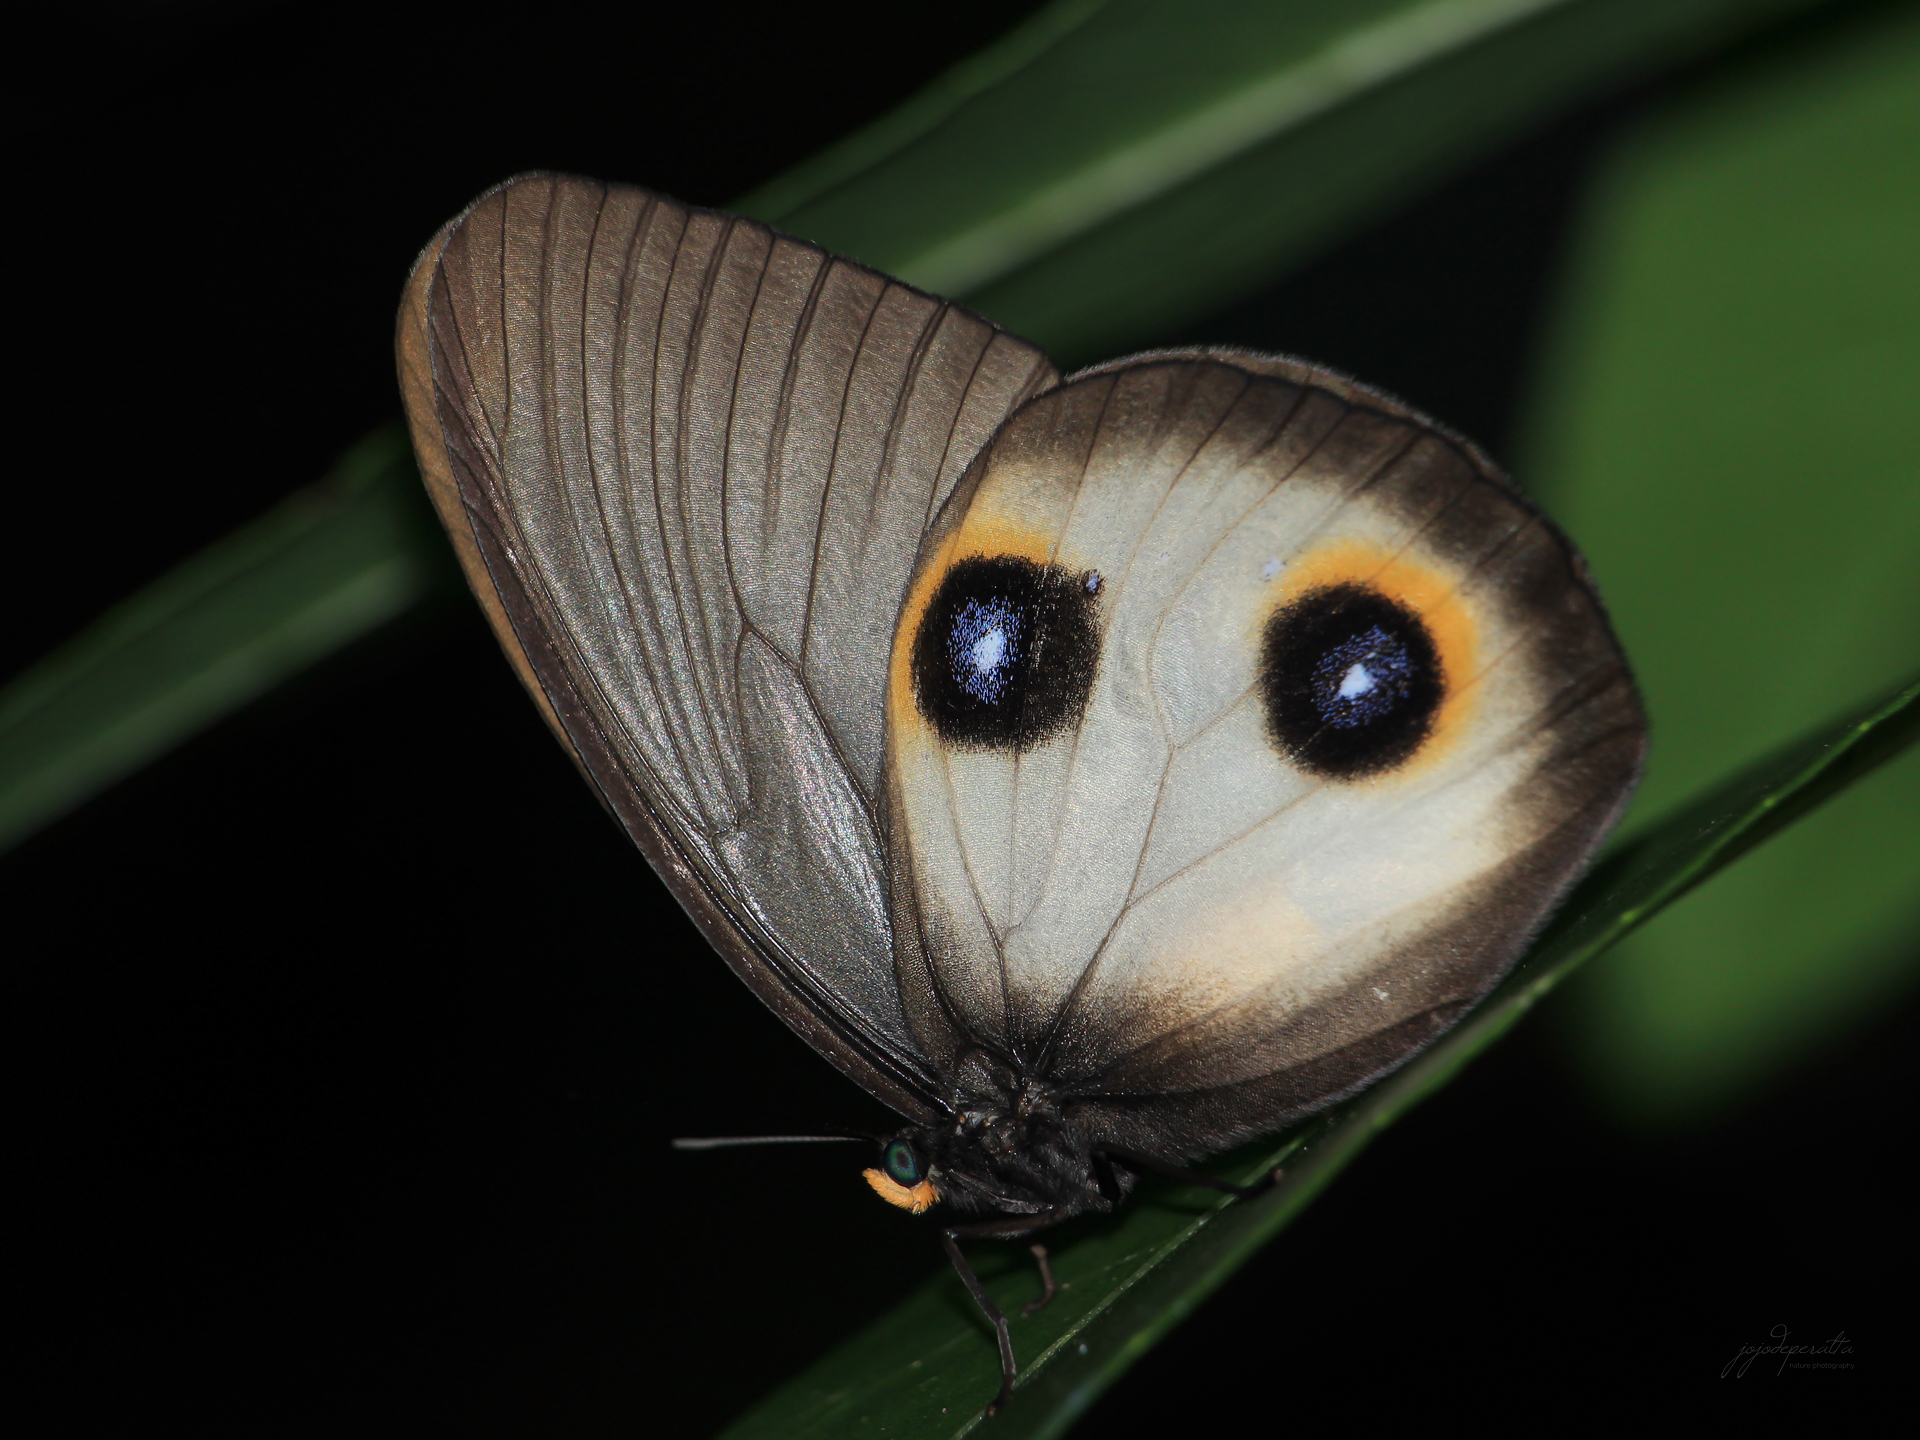 Silky Owl butterfly Taenaris horsfieldii plateni photo by Jojo De Peralta in Palawan